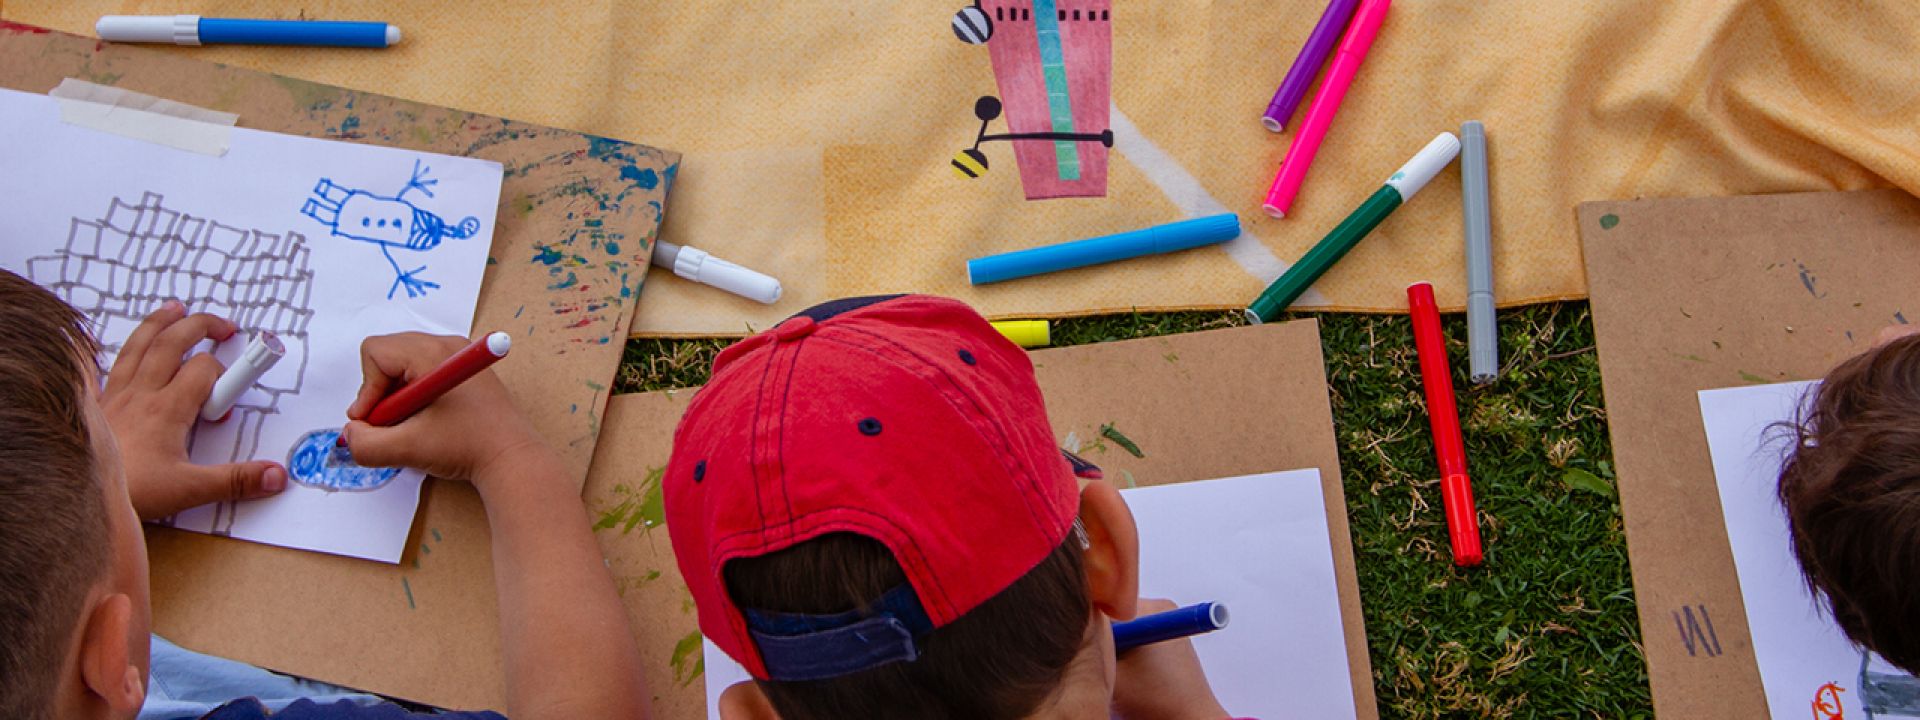 Παιδιά που ζωγραφίζουν